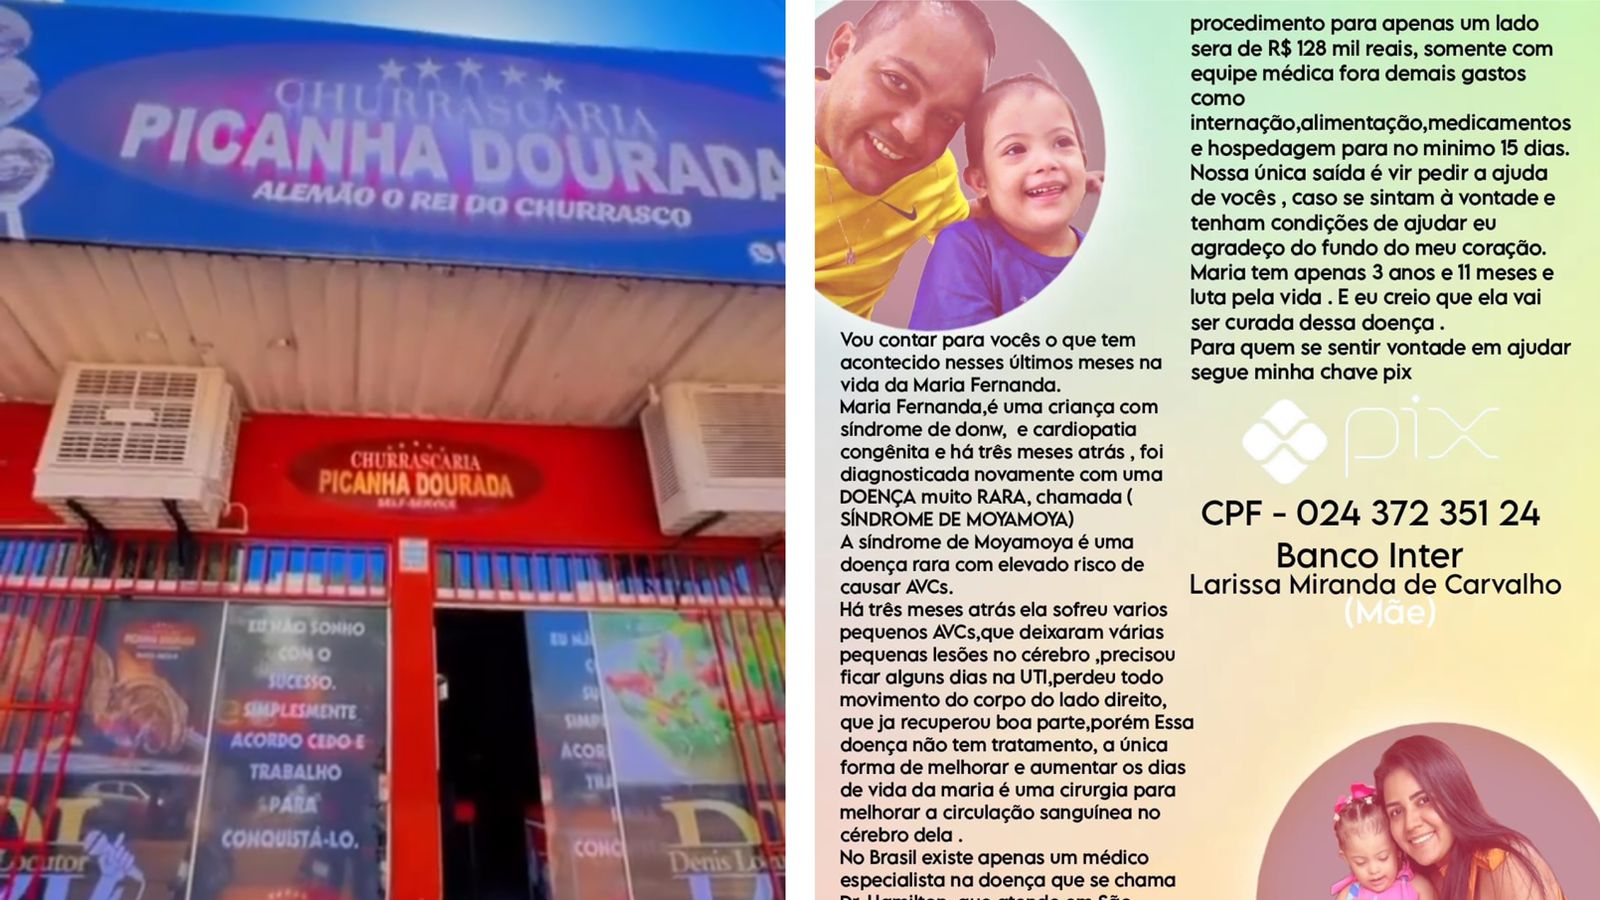 Churracaria Picanha Dourada, em Taquaralto, realiza ação solidária nesta terça (7), em prol de cirurgia para criança diagnosticada com síndrome de moyamoya